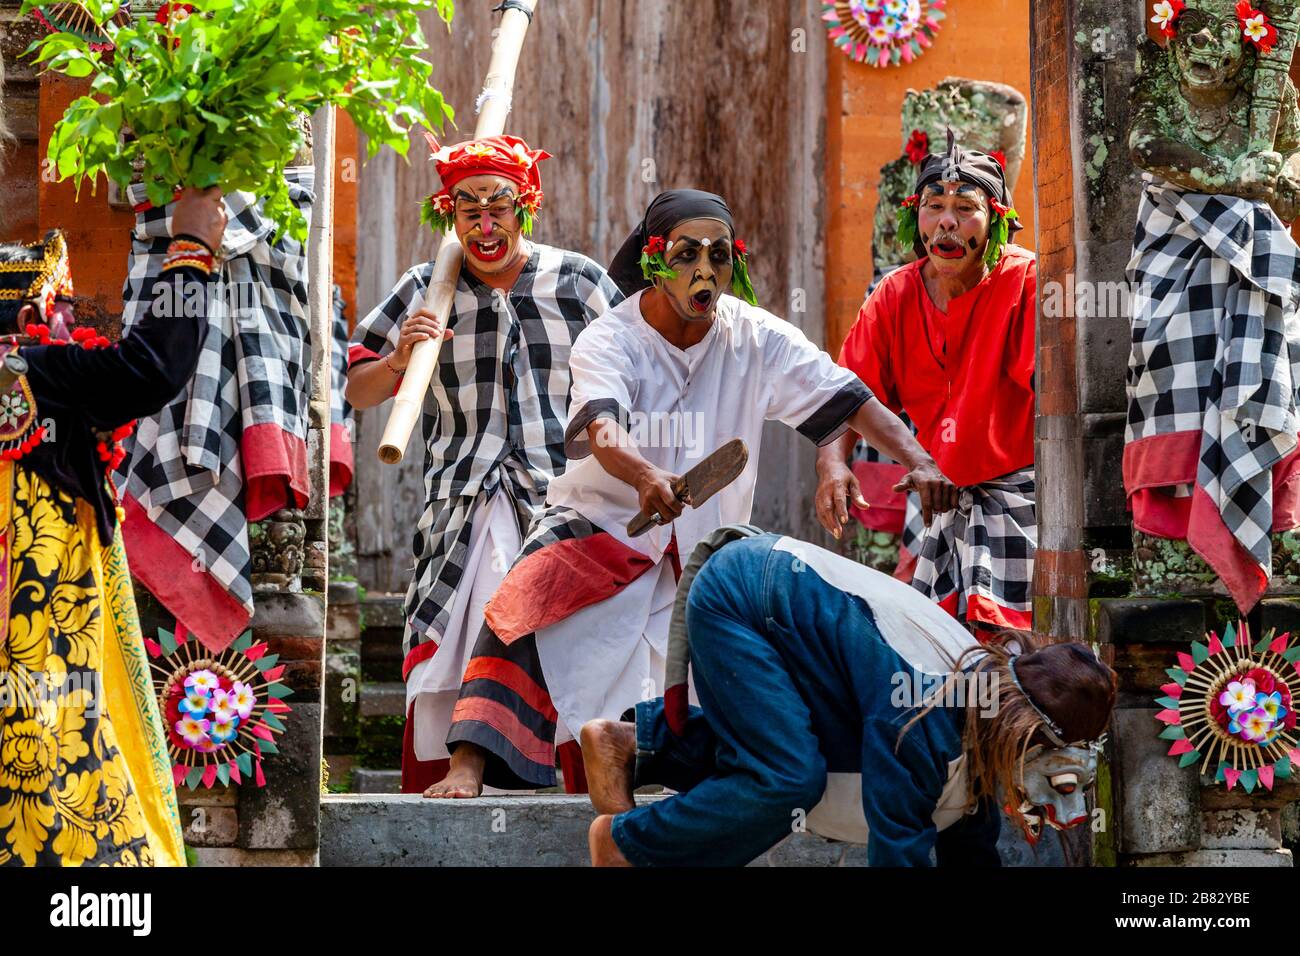 Les habitants de la région se sont produit dans UN Barong balinais traditionnel et un Kris Dance Show, Batabulan, Bali, Indonésie. Banque D'Images